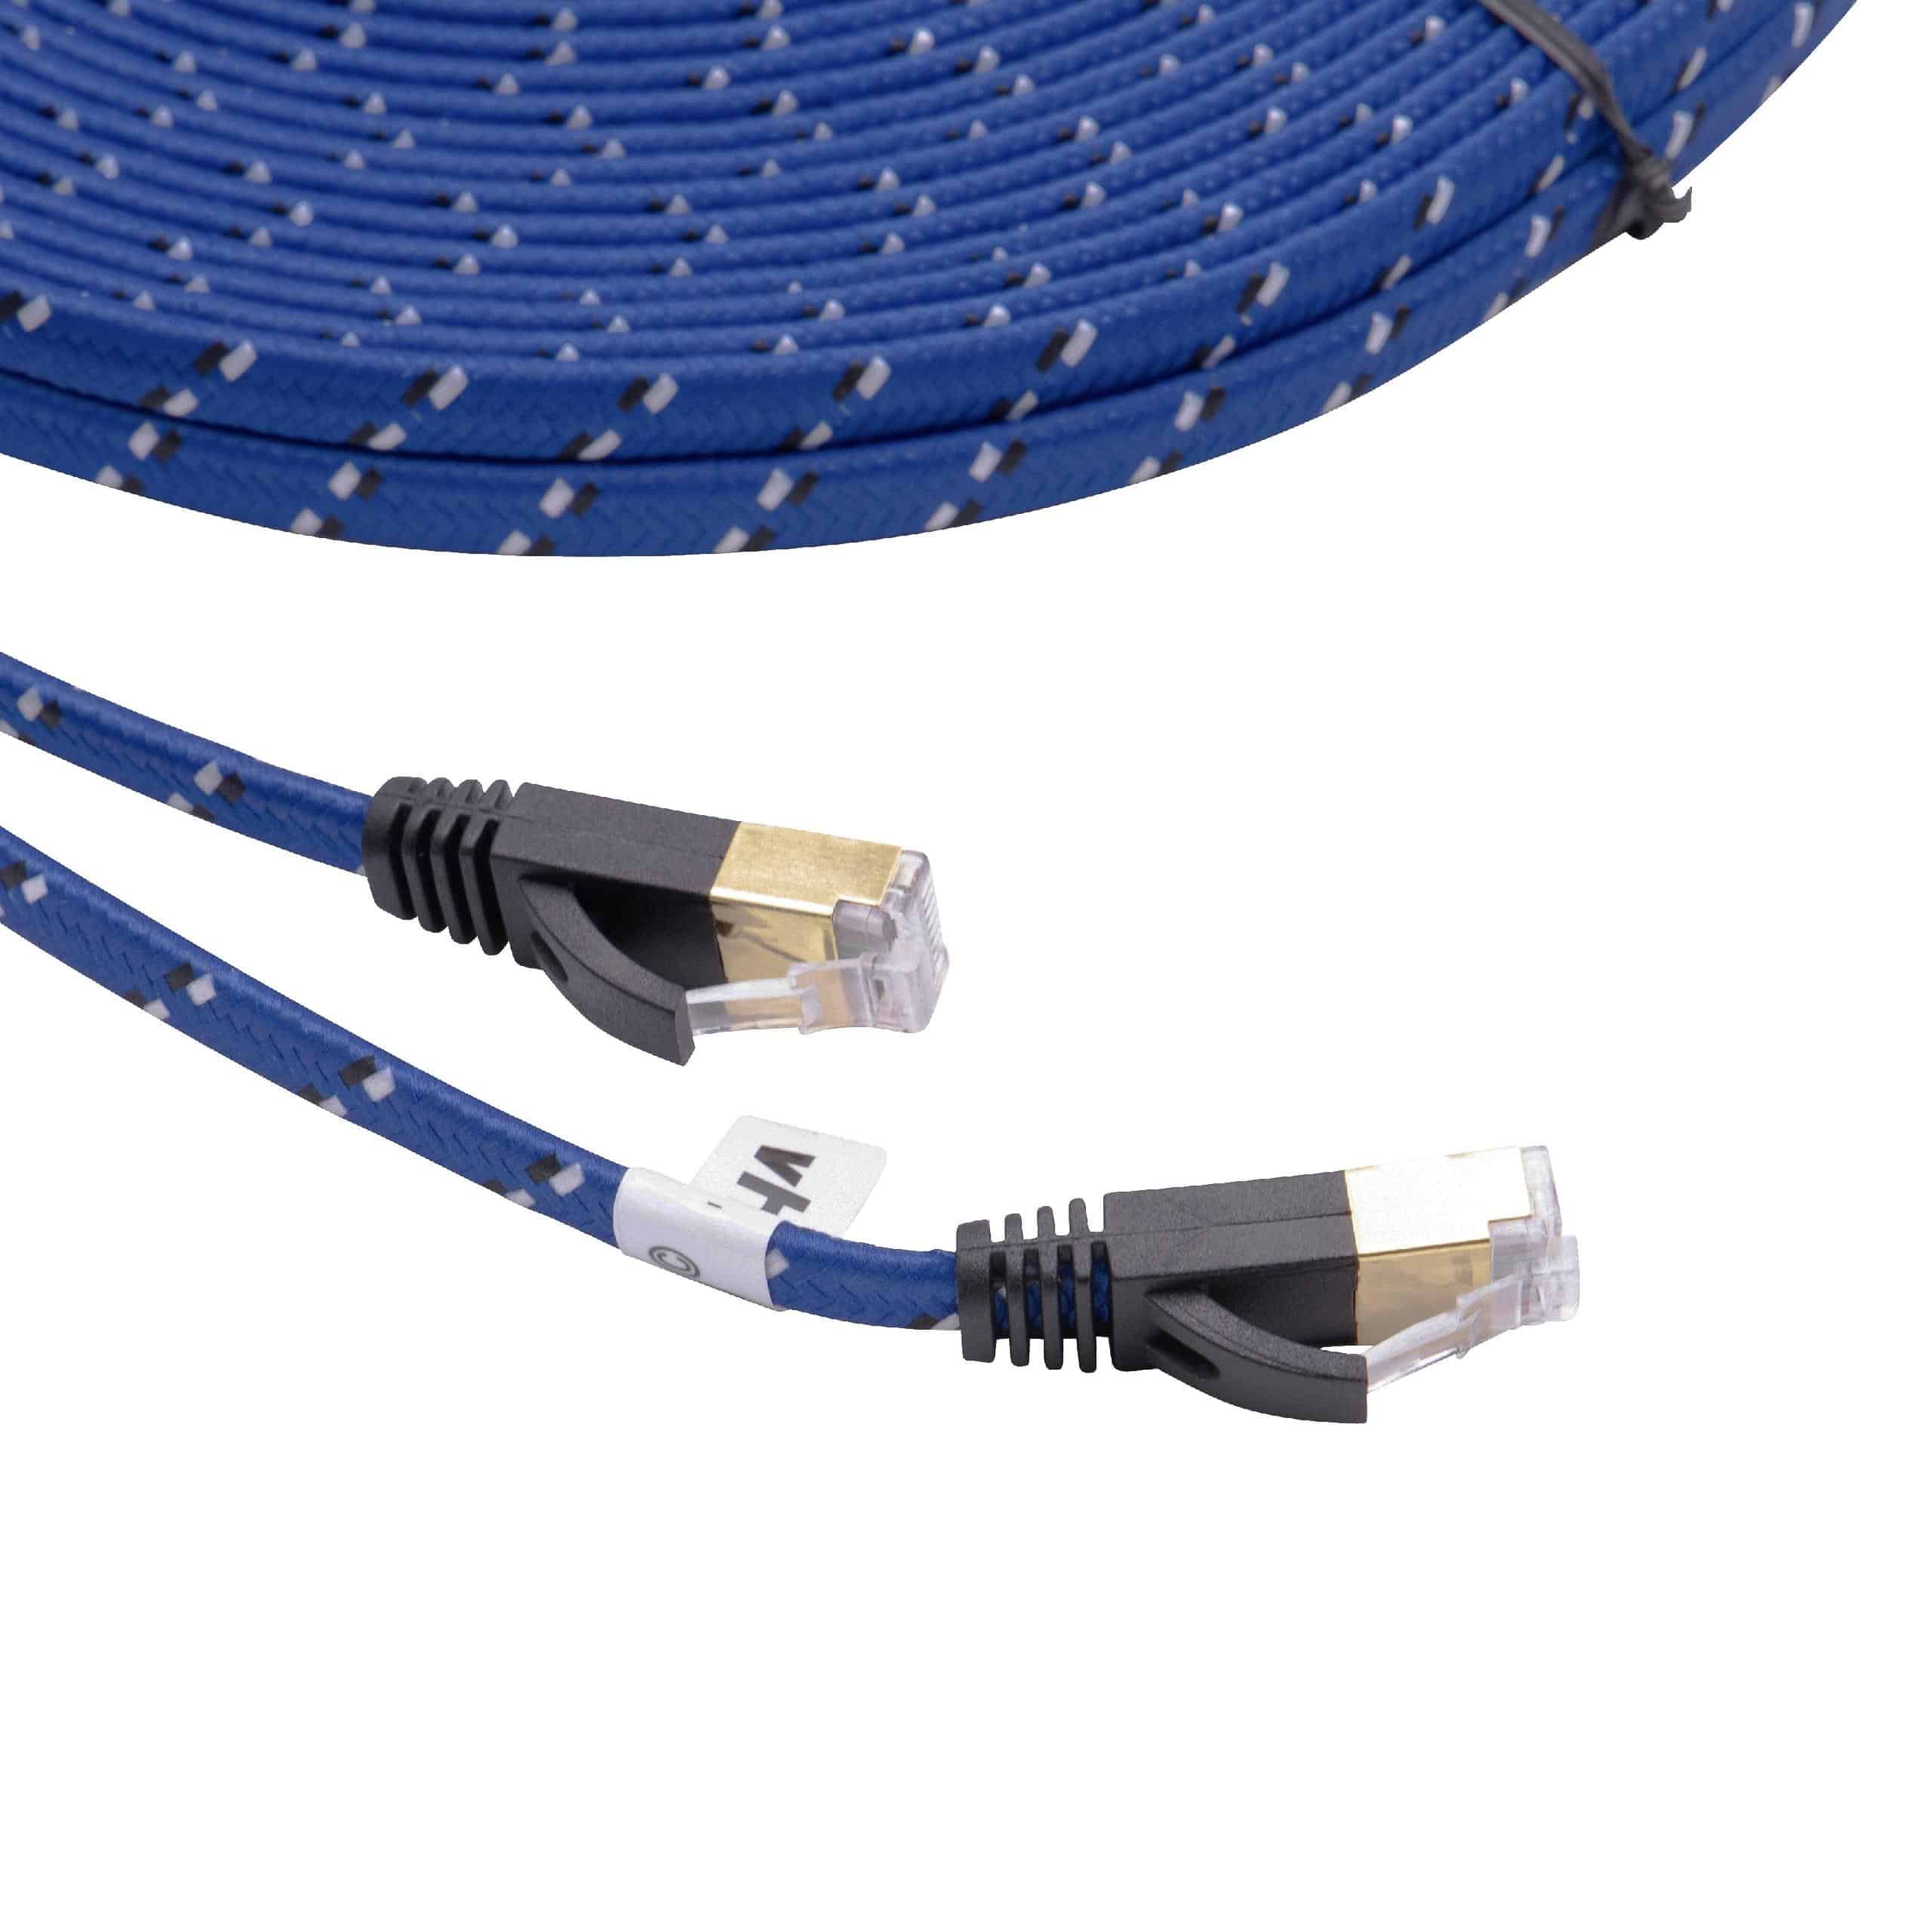 Netzwerkkabel LAN Kabel Patchkabel Cat7, 20m, blau, flach